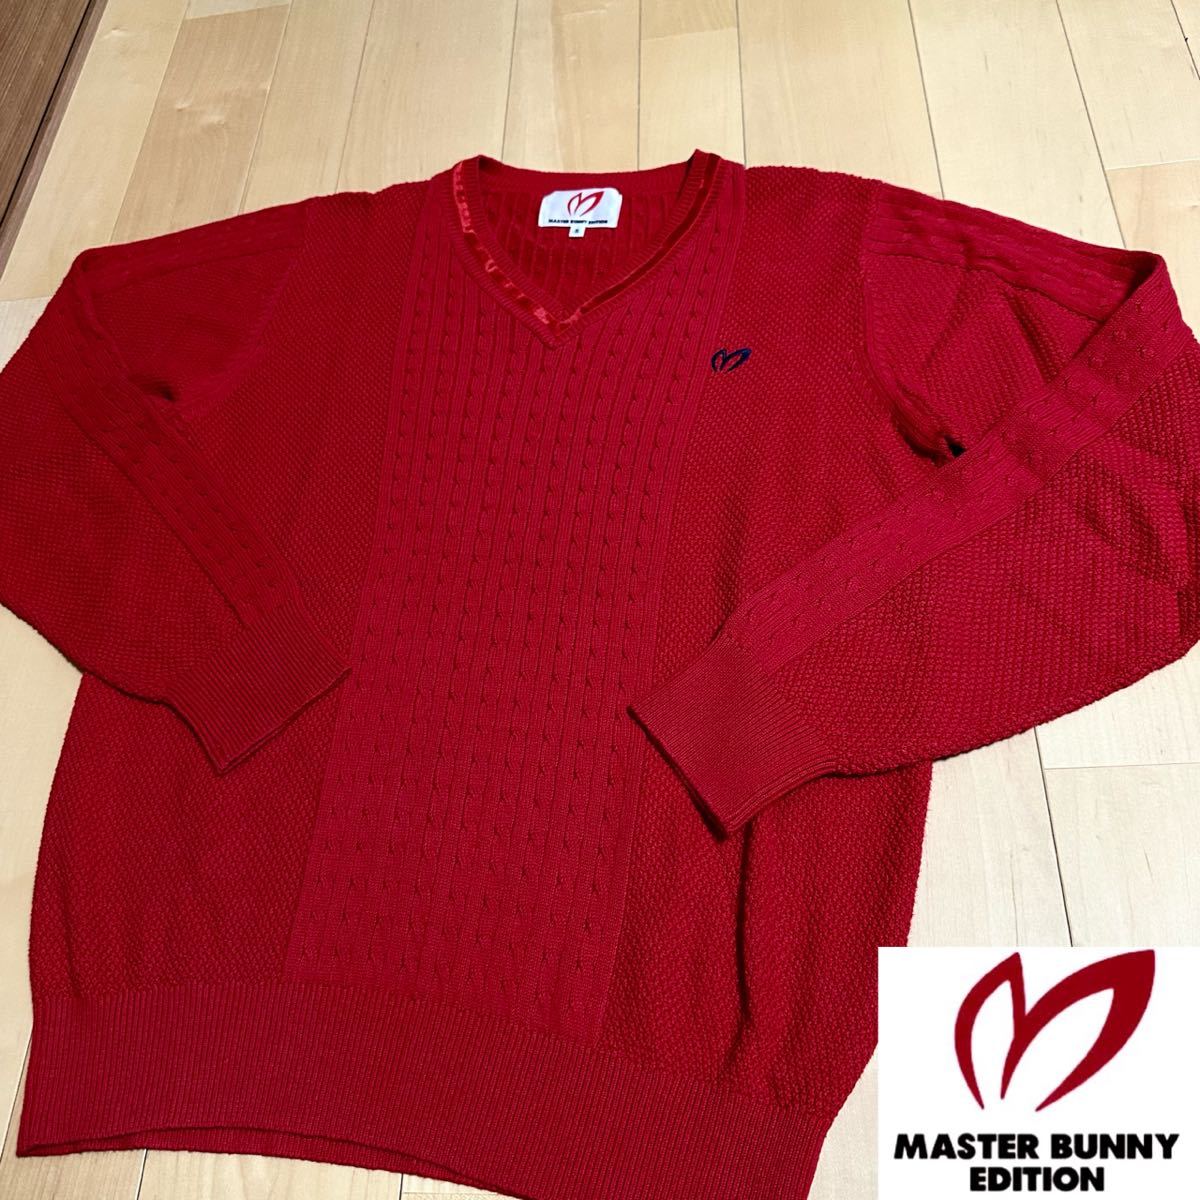 マスターバニー5★ニットセーター サイズ5 メンズ 美品 ロゴ刺繍 高級ゴルフブランド パーリーゲイツ